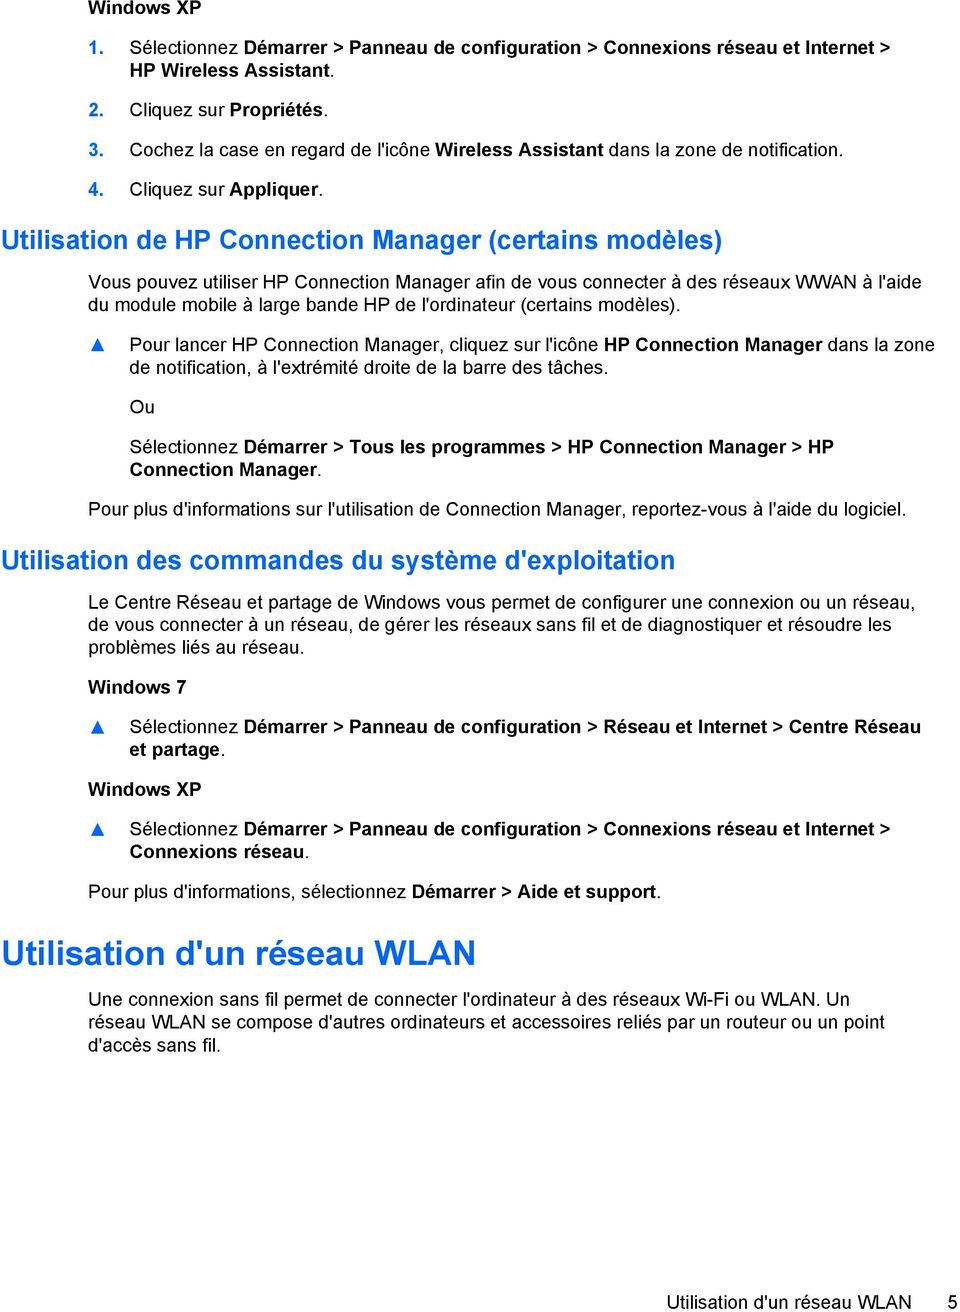 Utilisation de HP Connection Manager (certains modèles) Vous pouvez utiliser HP Connection Manager afin de vous connecter à des réseaux WWAN à l'aide du module mobile à large bande HP de l'ordinateur